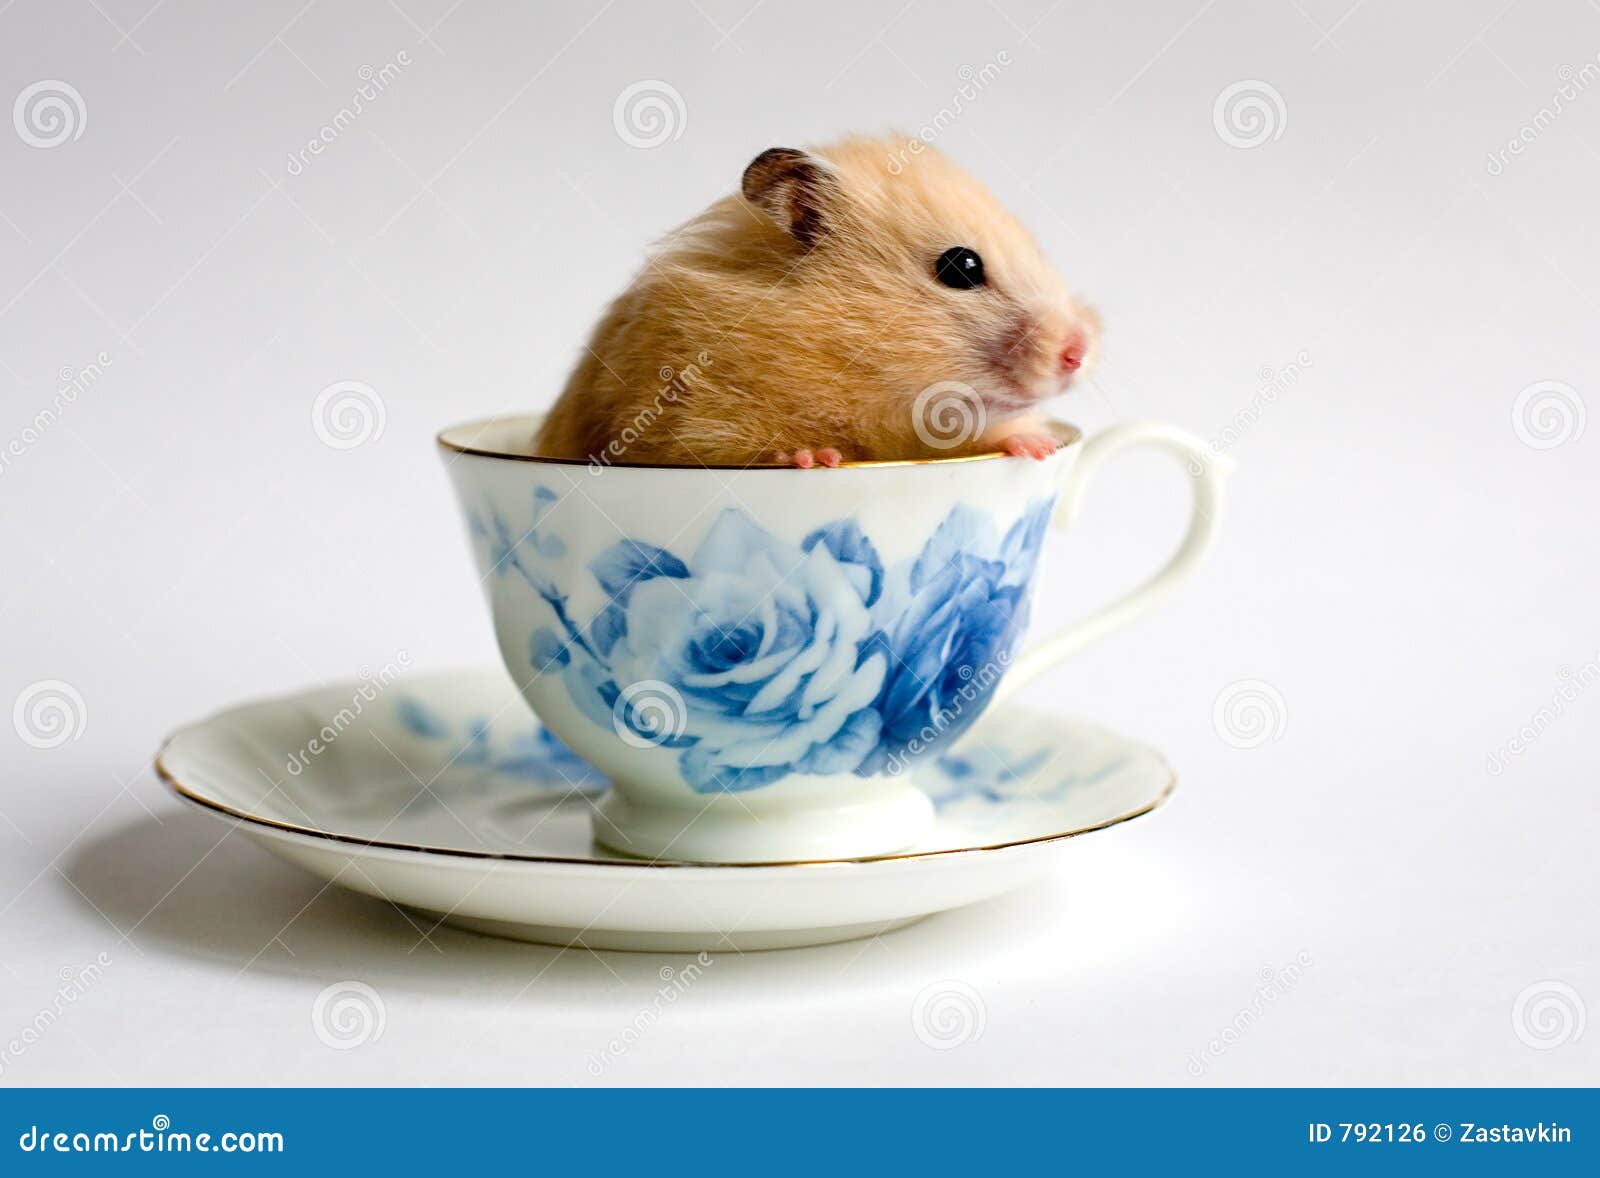 创意新款卡通独角兽陶瓷杯马克杯 新奇特3D动物手柄水杯咖啡杯子-阿里巴巴